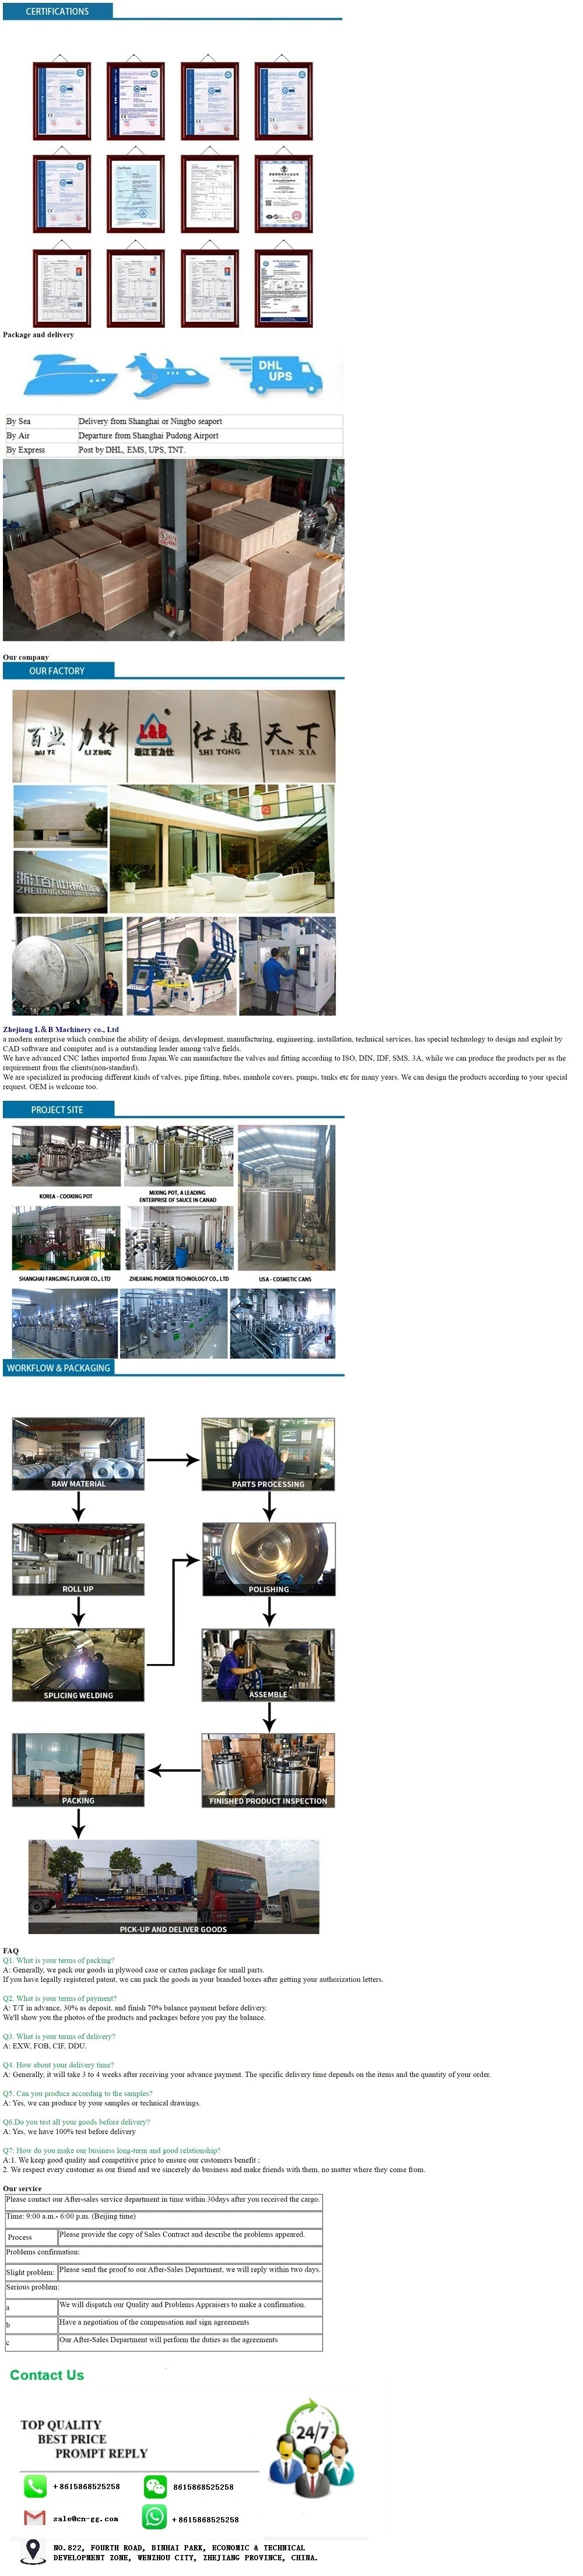 High Shear Emulsion Stainless Steel Emulsifier Pump